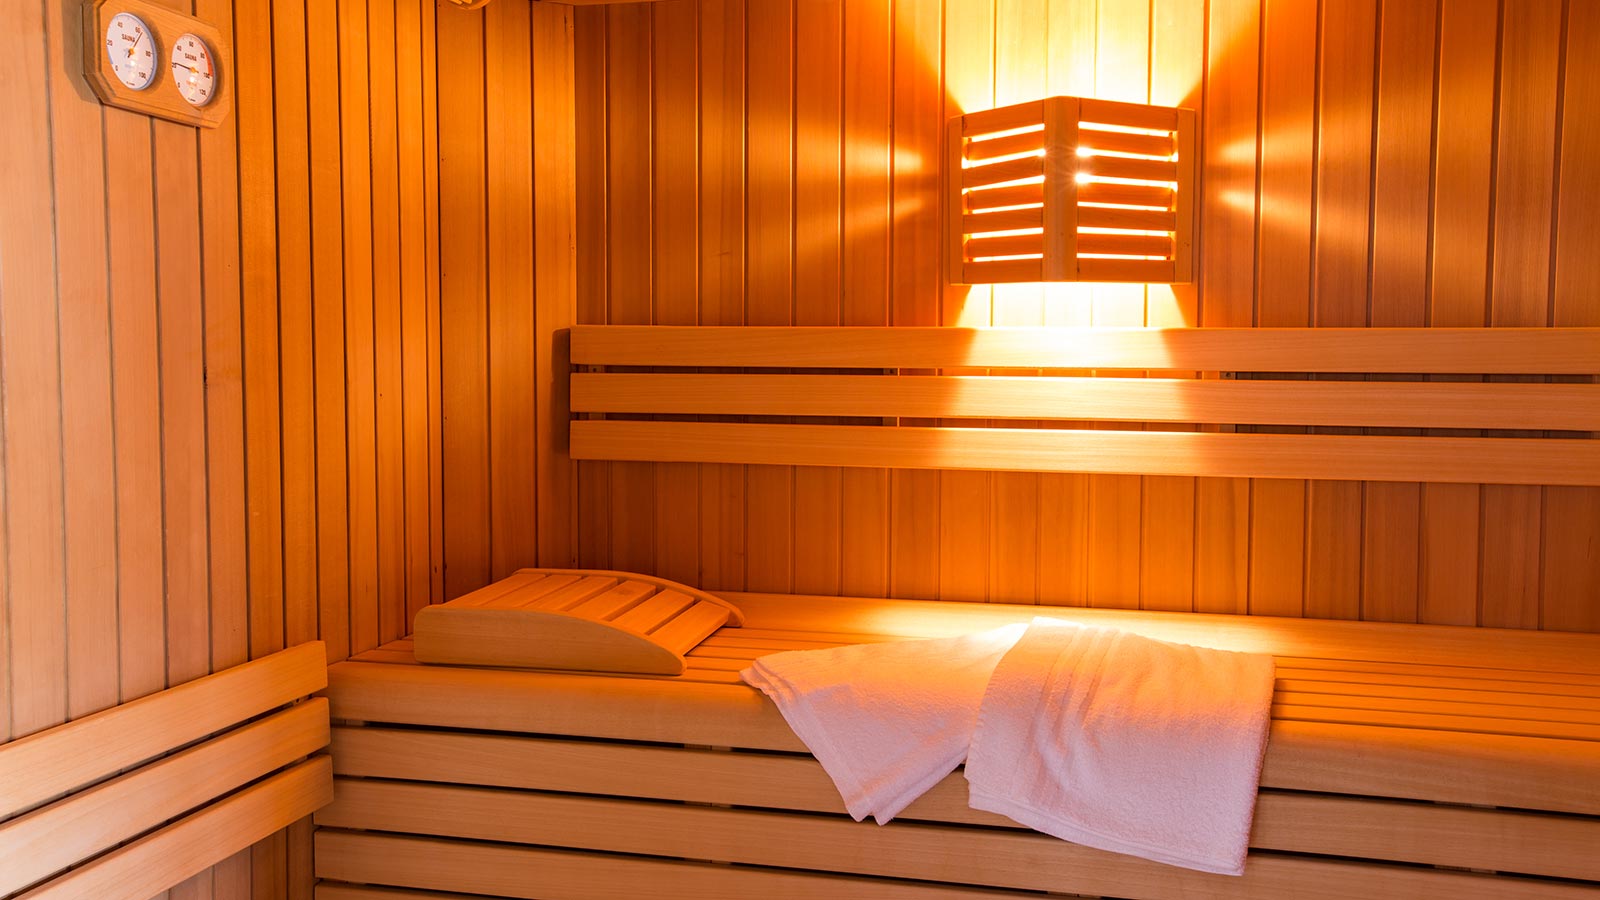 Scorcio della sauna finlandese presso l'area benessere presso il Residence